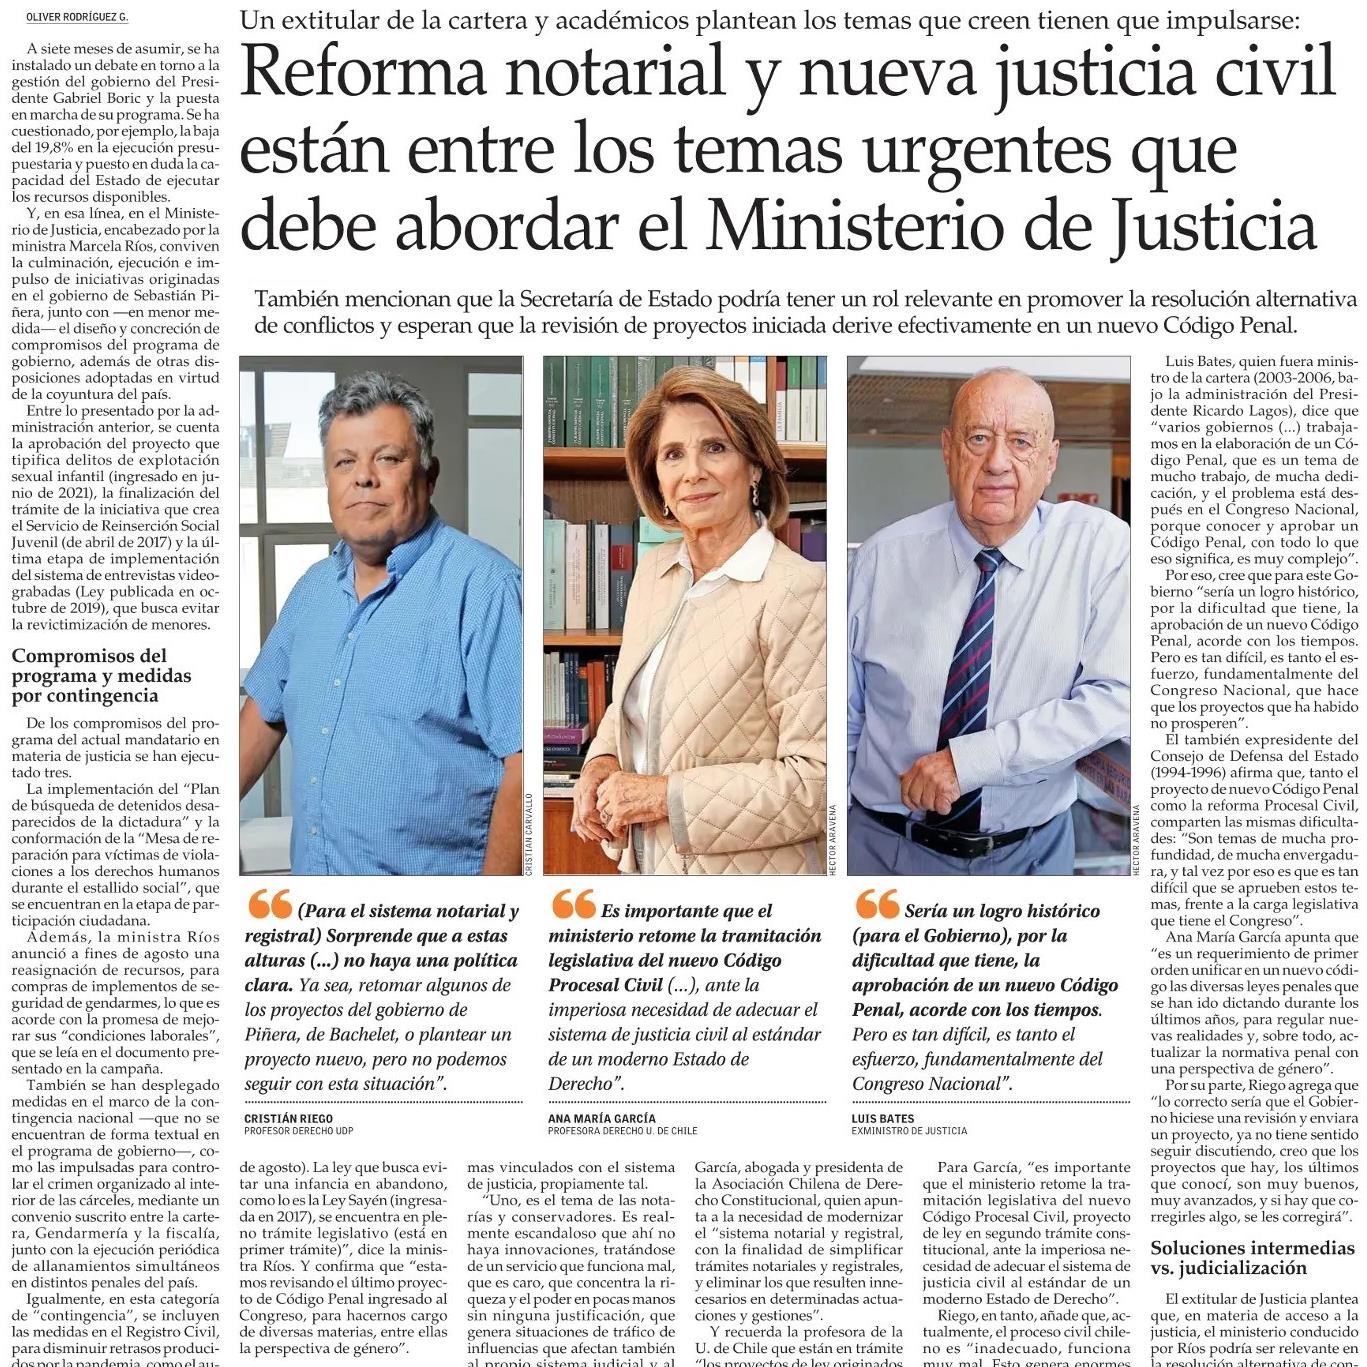 Reforma Notarial y Nueva Justicia civil están entre los temas urgentes que debe abordar el Ministerio de Justicia y Derechos Humanos, participa Cristián Riego